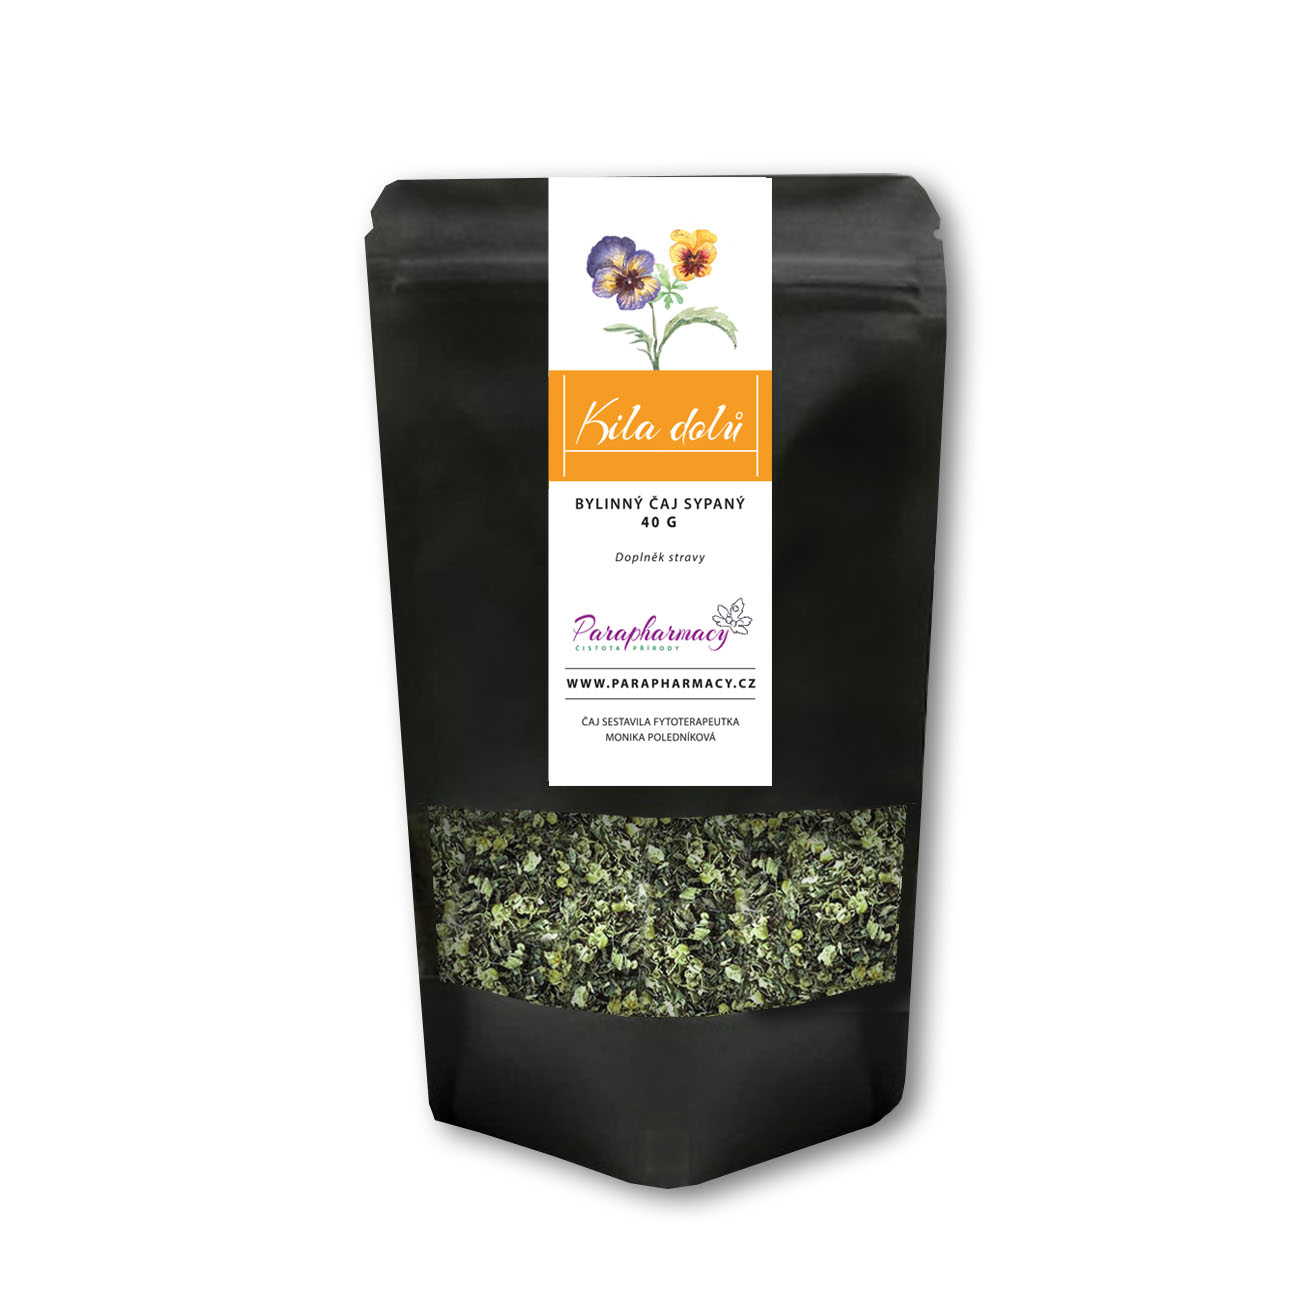 KILA DOLŮ, funkční bylinný čaj